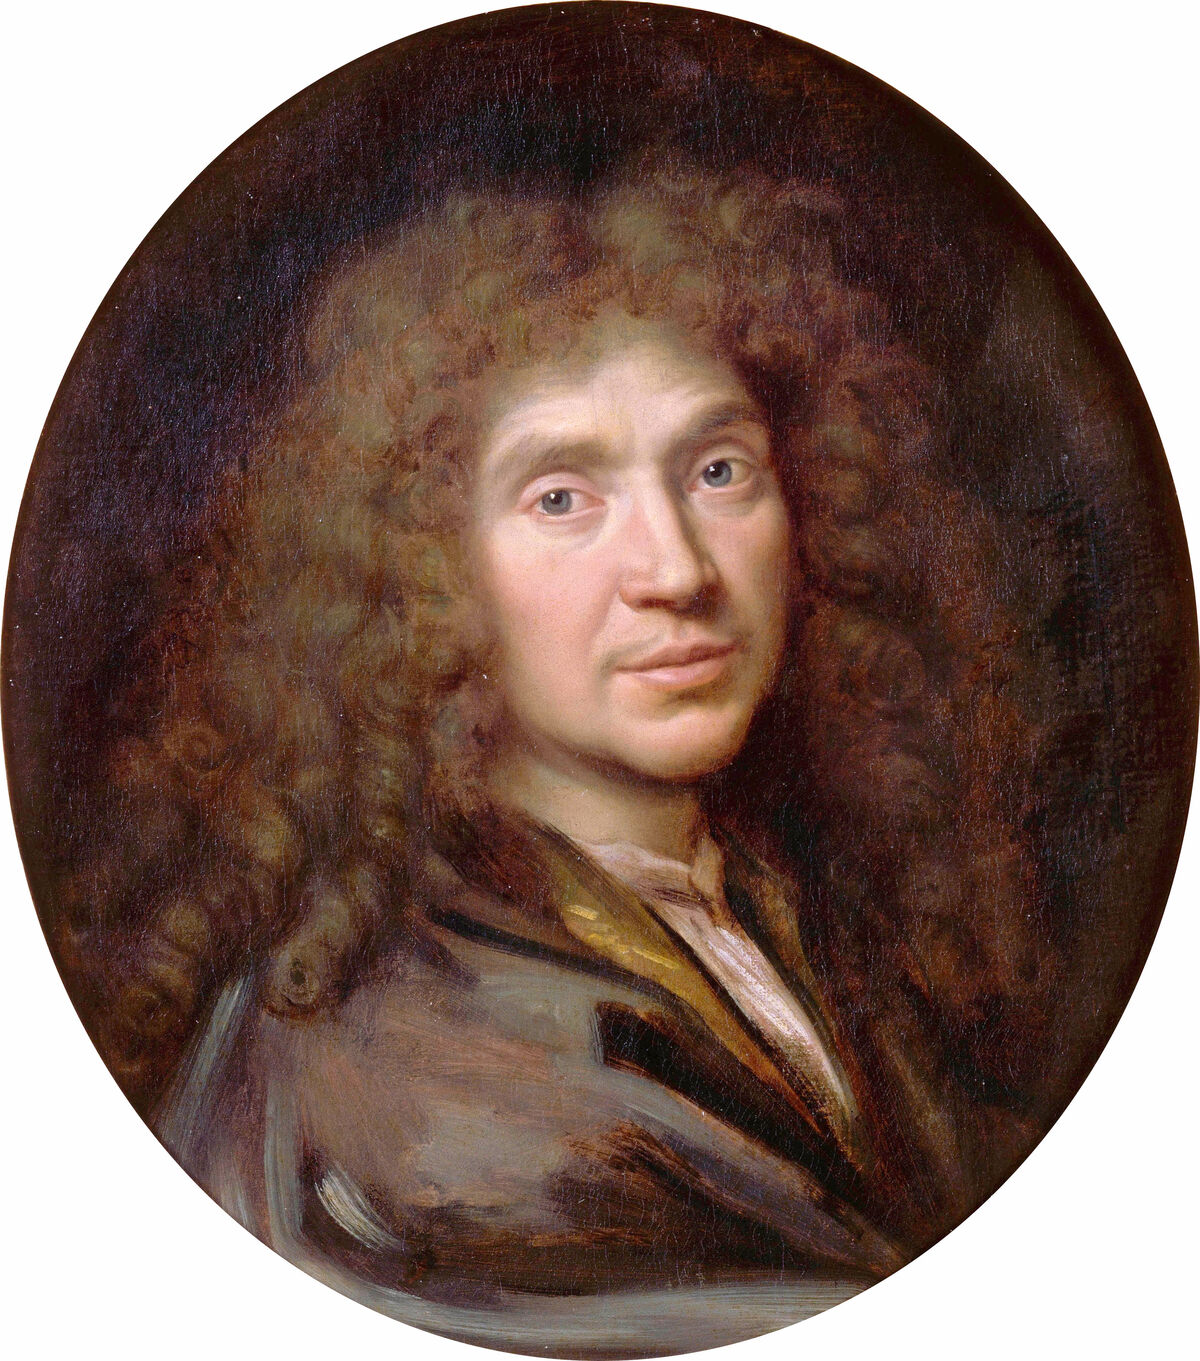 GFD 1/68: Jean-Baptiste Poquelin genannt Molière (Portrait von Pierre Mignard, um 1658)